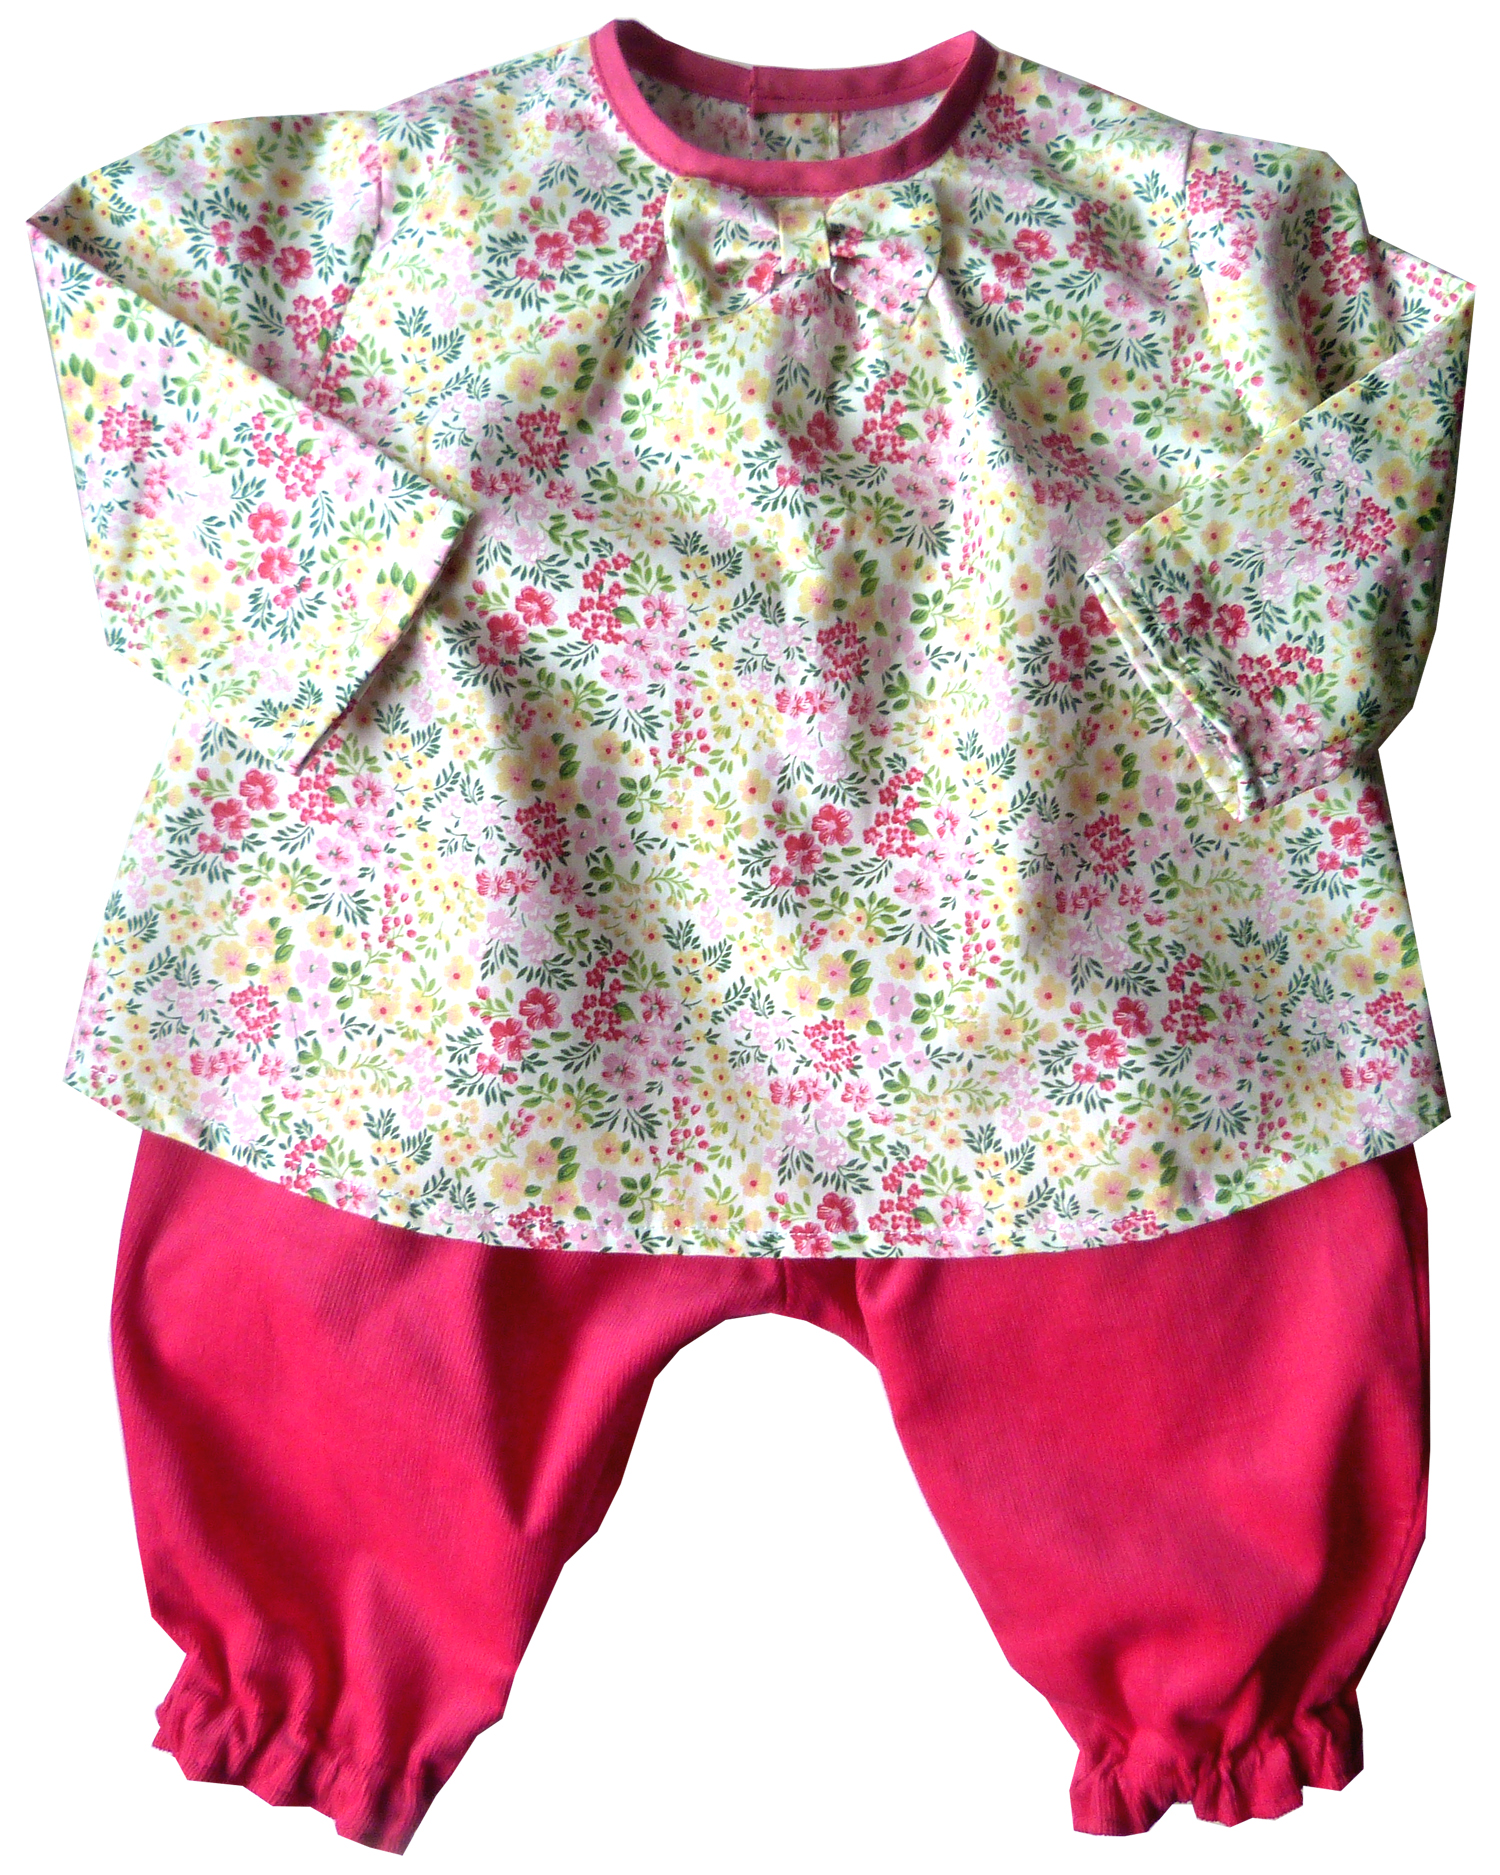 corsage imprimé fleurs et pantalon bébé rose